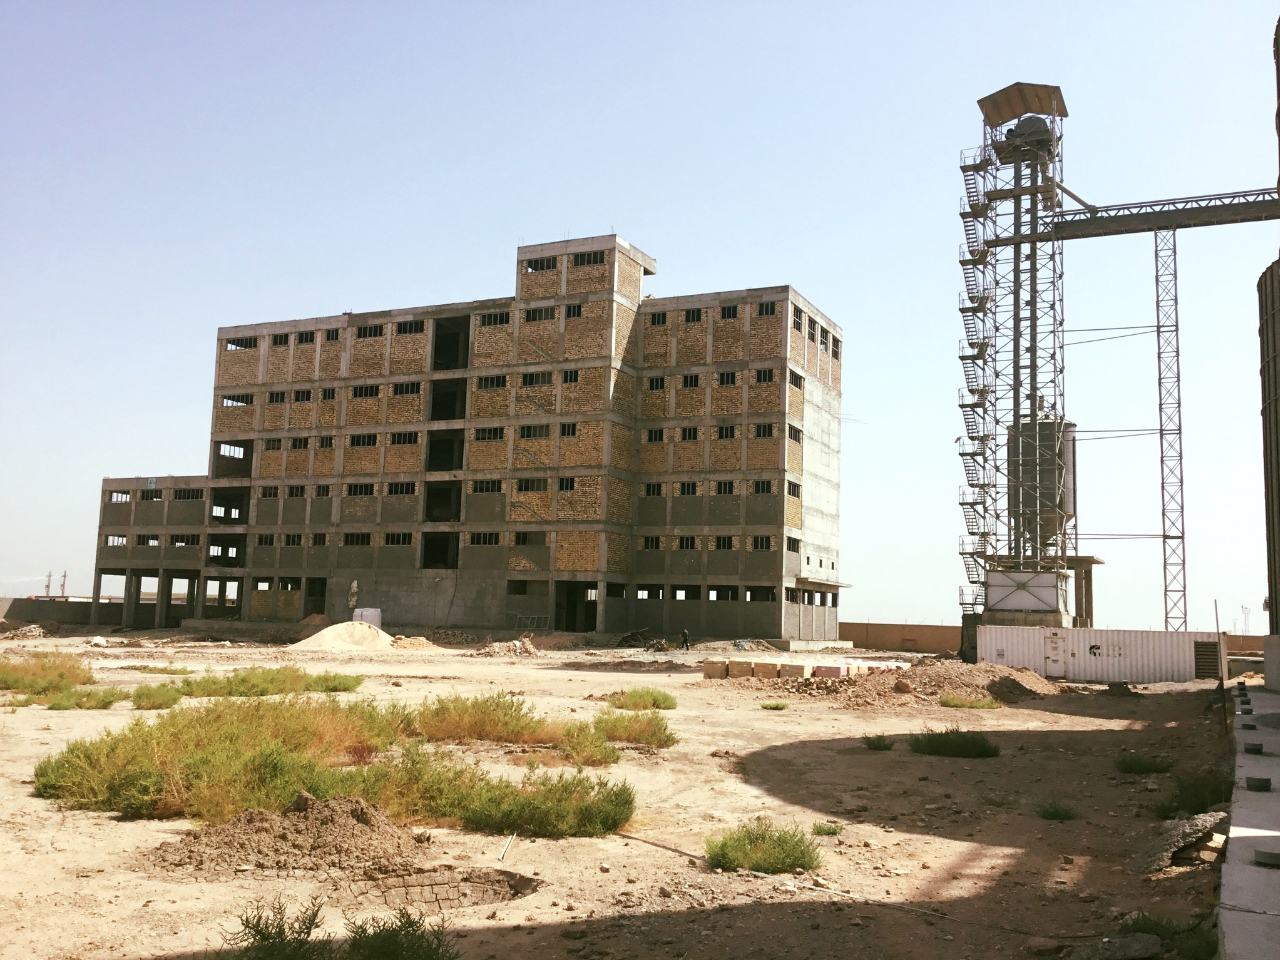  Genç Değirmen continues its projects in Iraq…